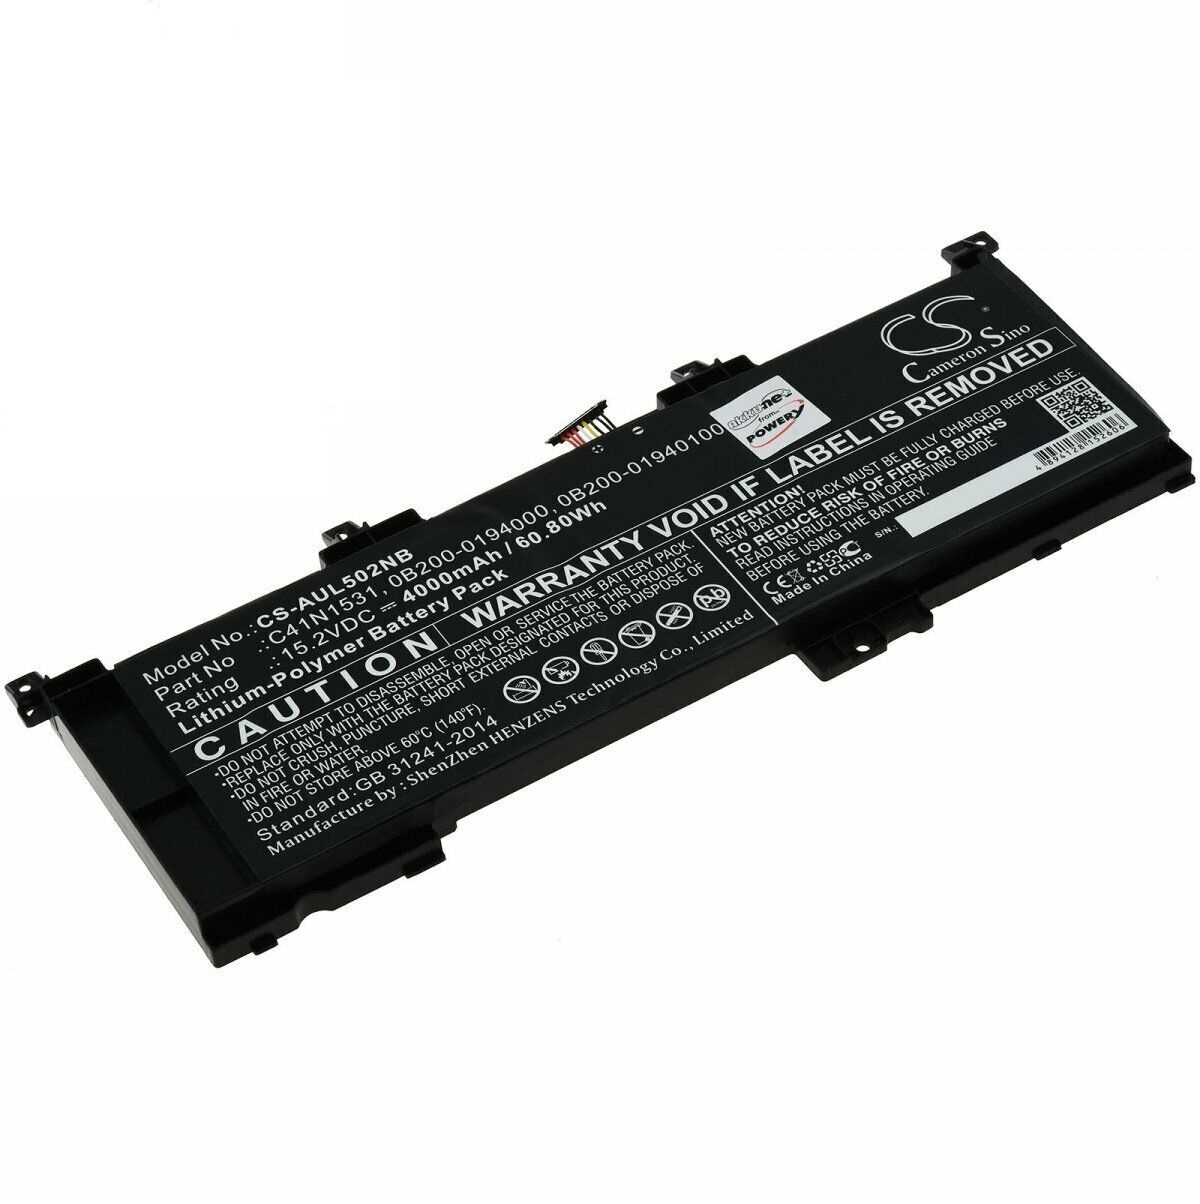 Batería para Asus GL502VY-DS71 GL502VY-DS74 Rog GL502VS GL502VT Rog Strix GL502VS C41N1531 0B200-01940100 (compatible)